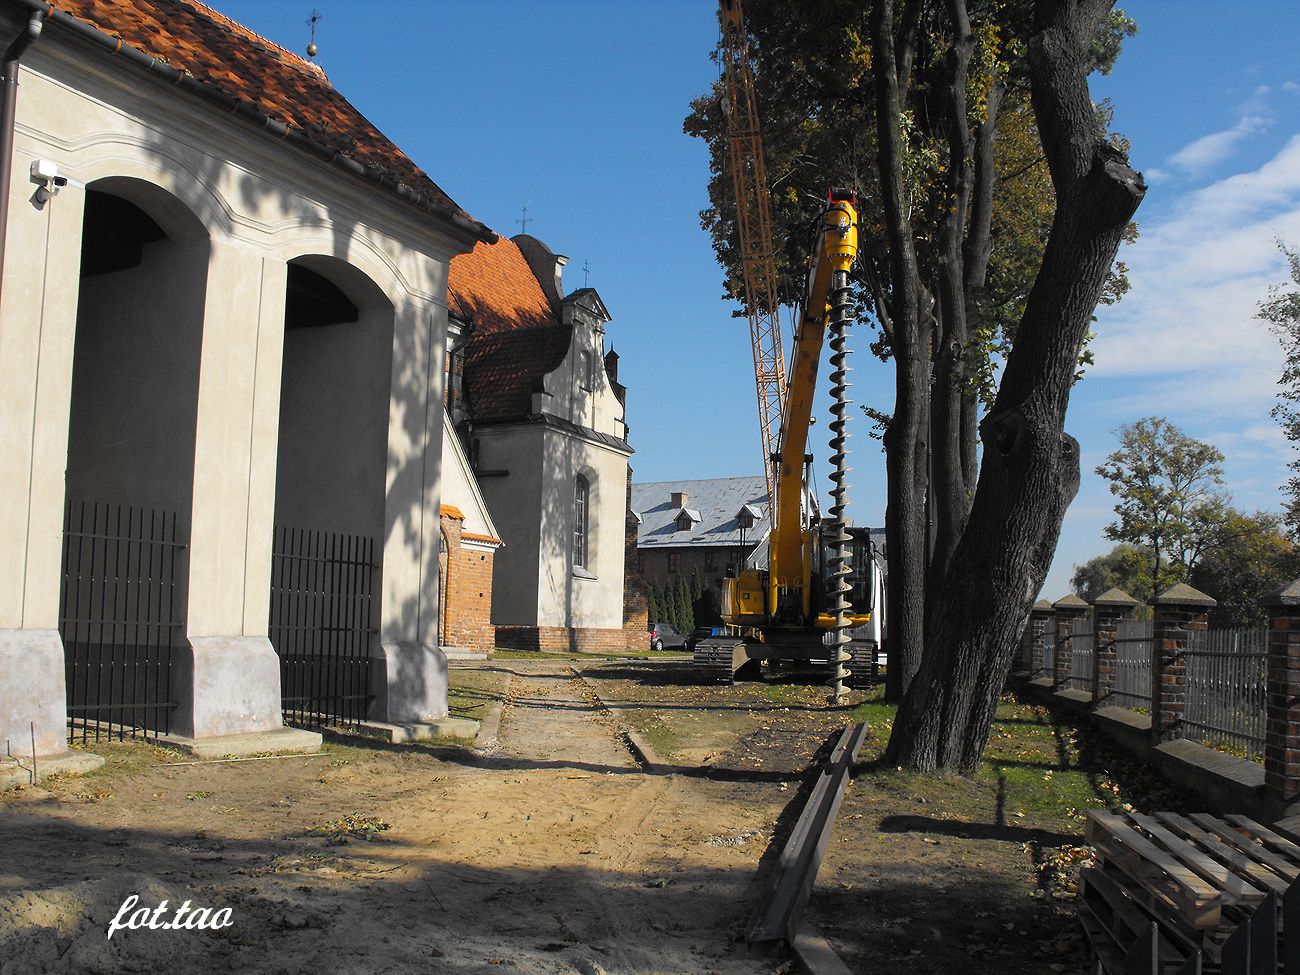 Dwig i wider ziemny to najwaniejsze maszyny uywane do prac ziemnych na klasztornym wzgrzu, padziernik 2013 r.